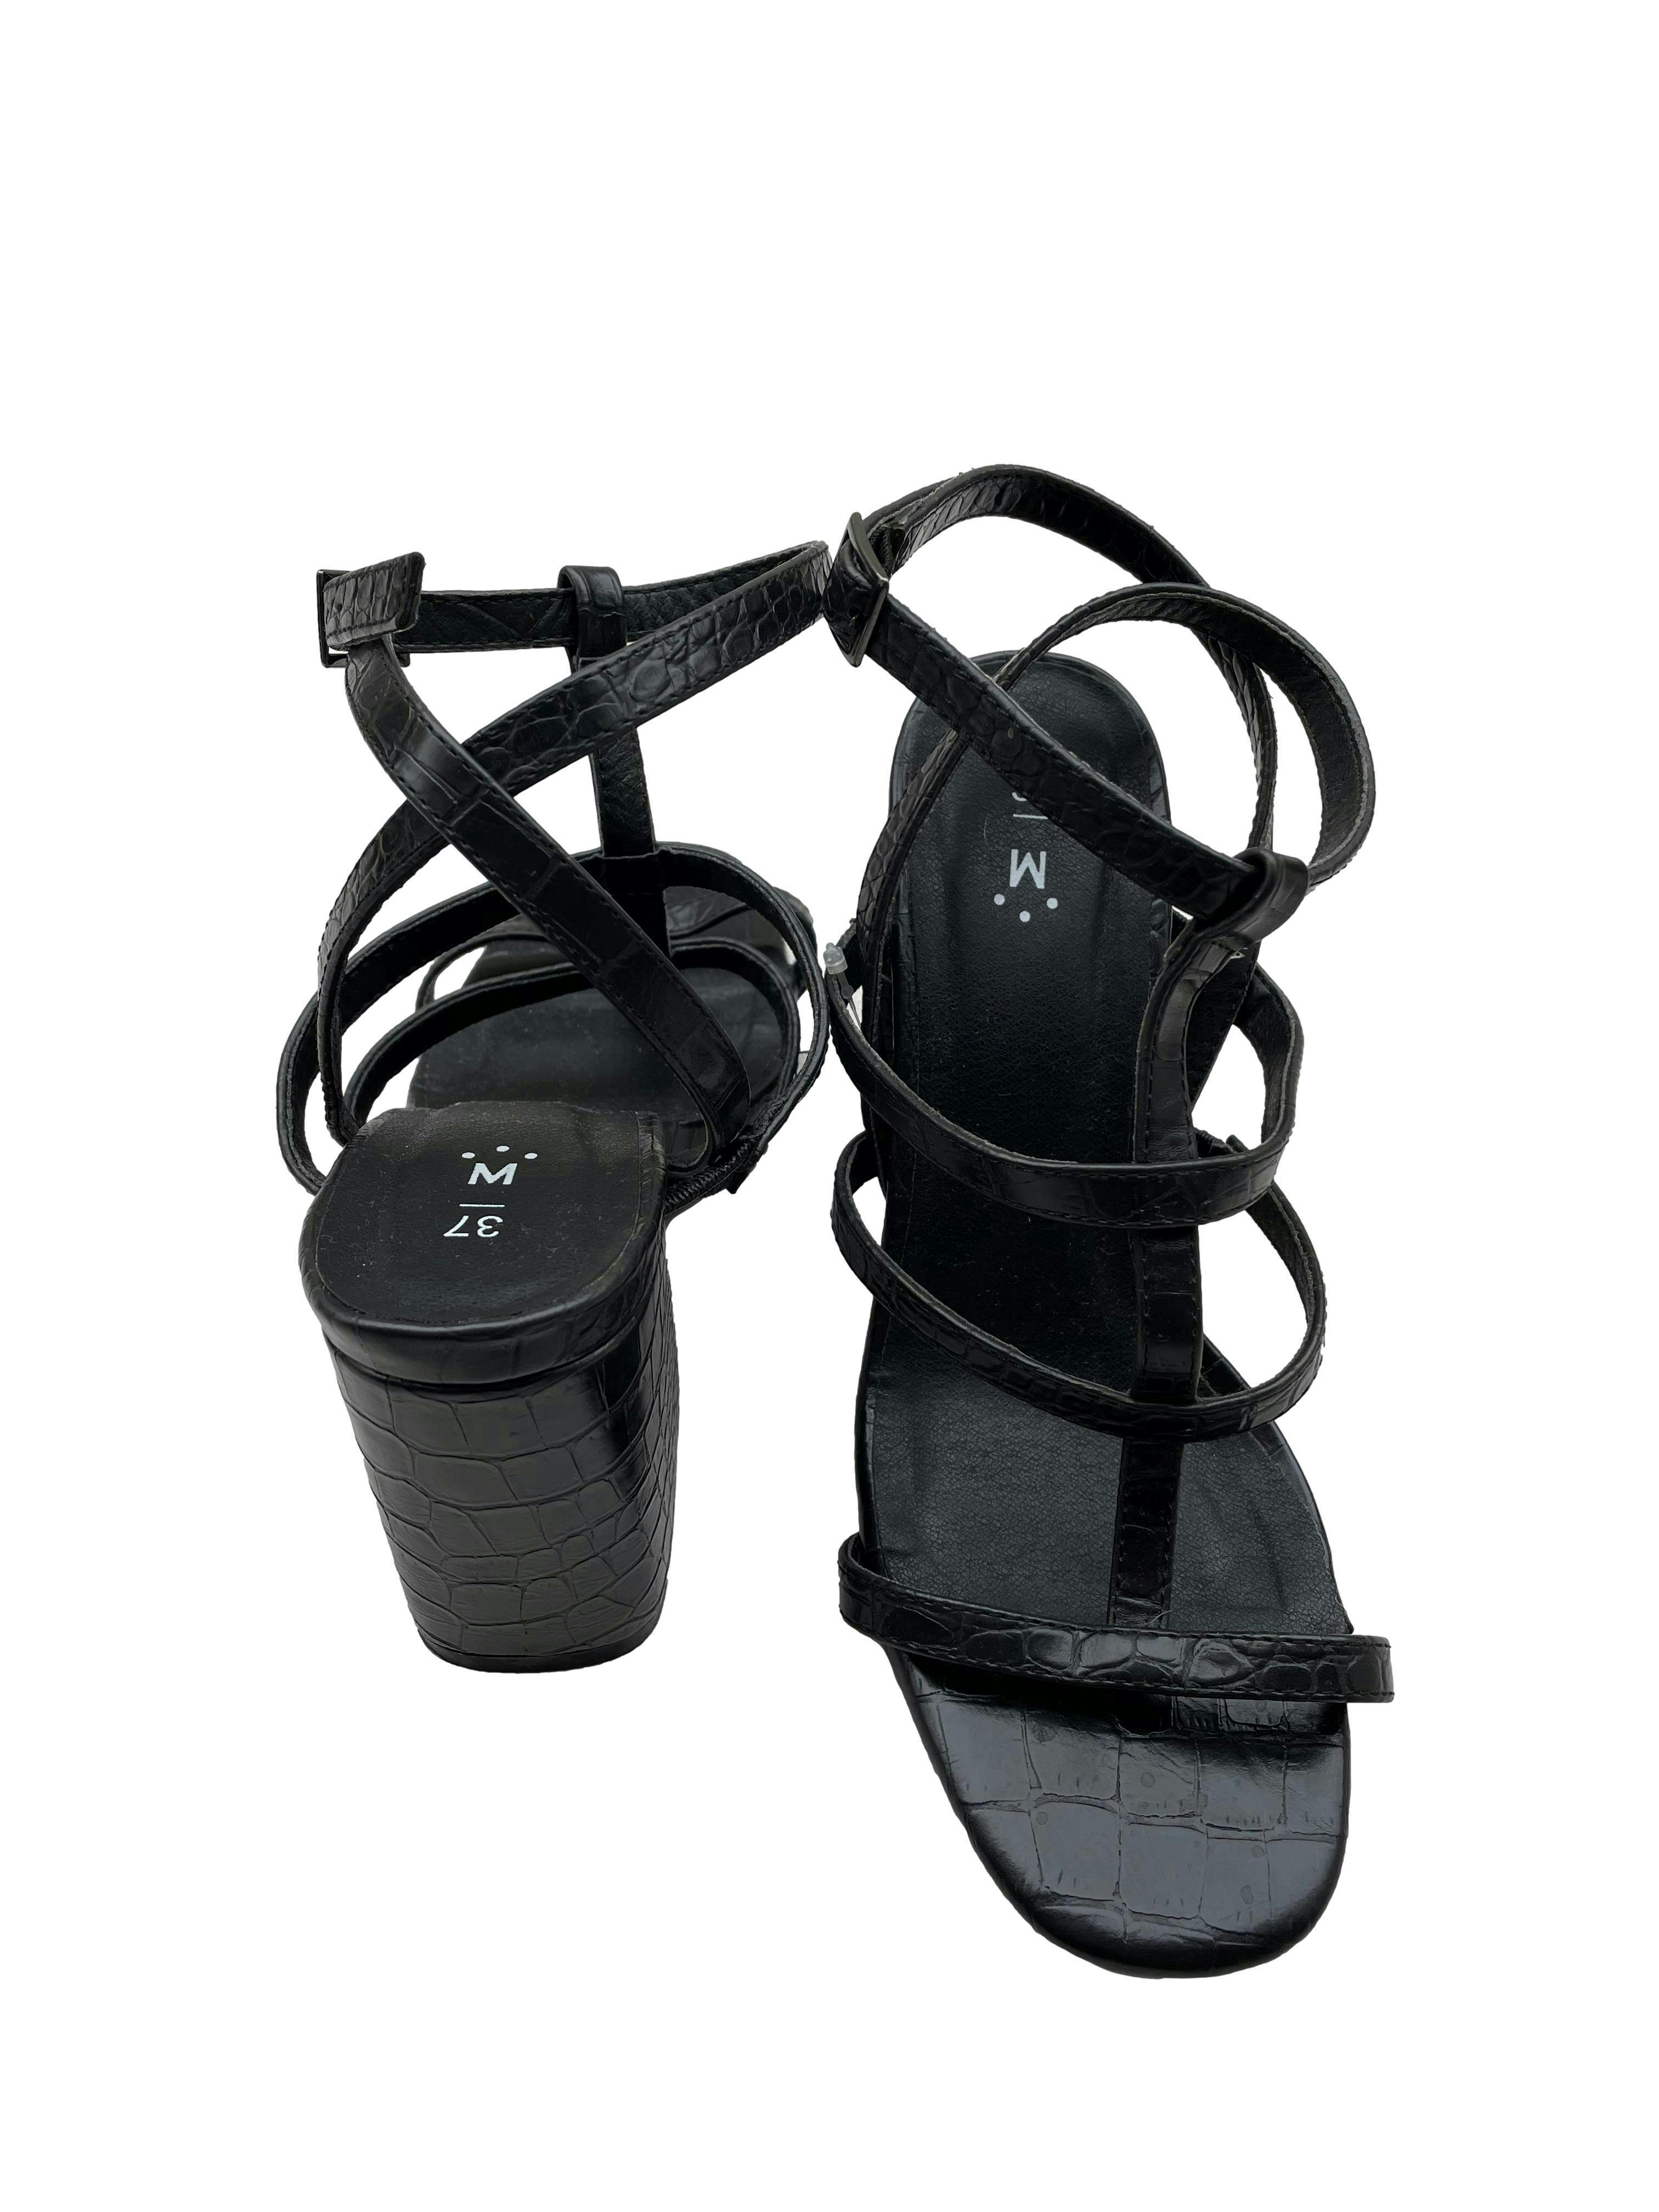 Sandalias de cuerina negras, correa al tobillo, taco grueso 9cm. Estado como nuevo.